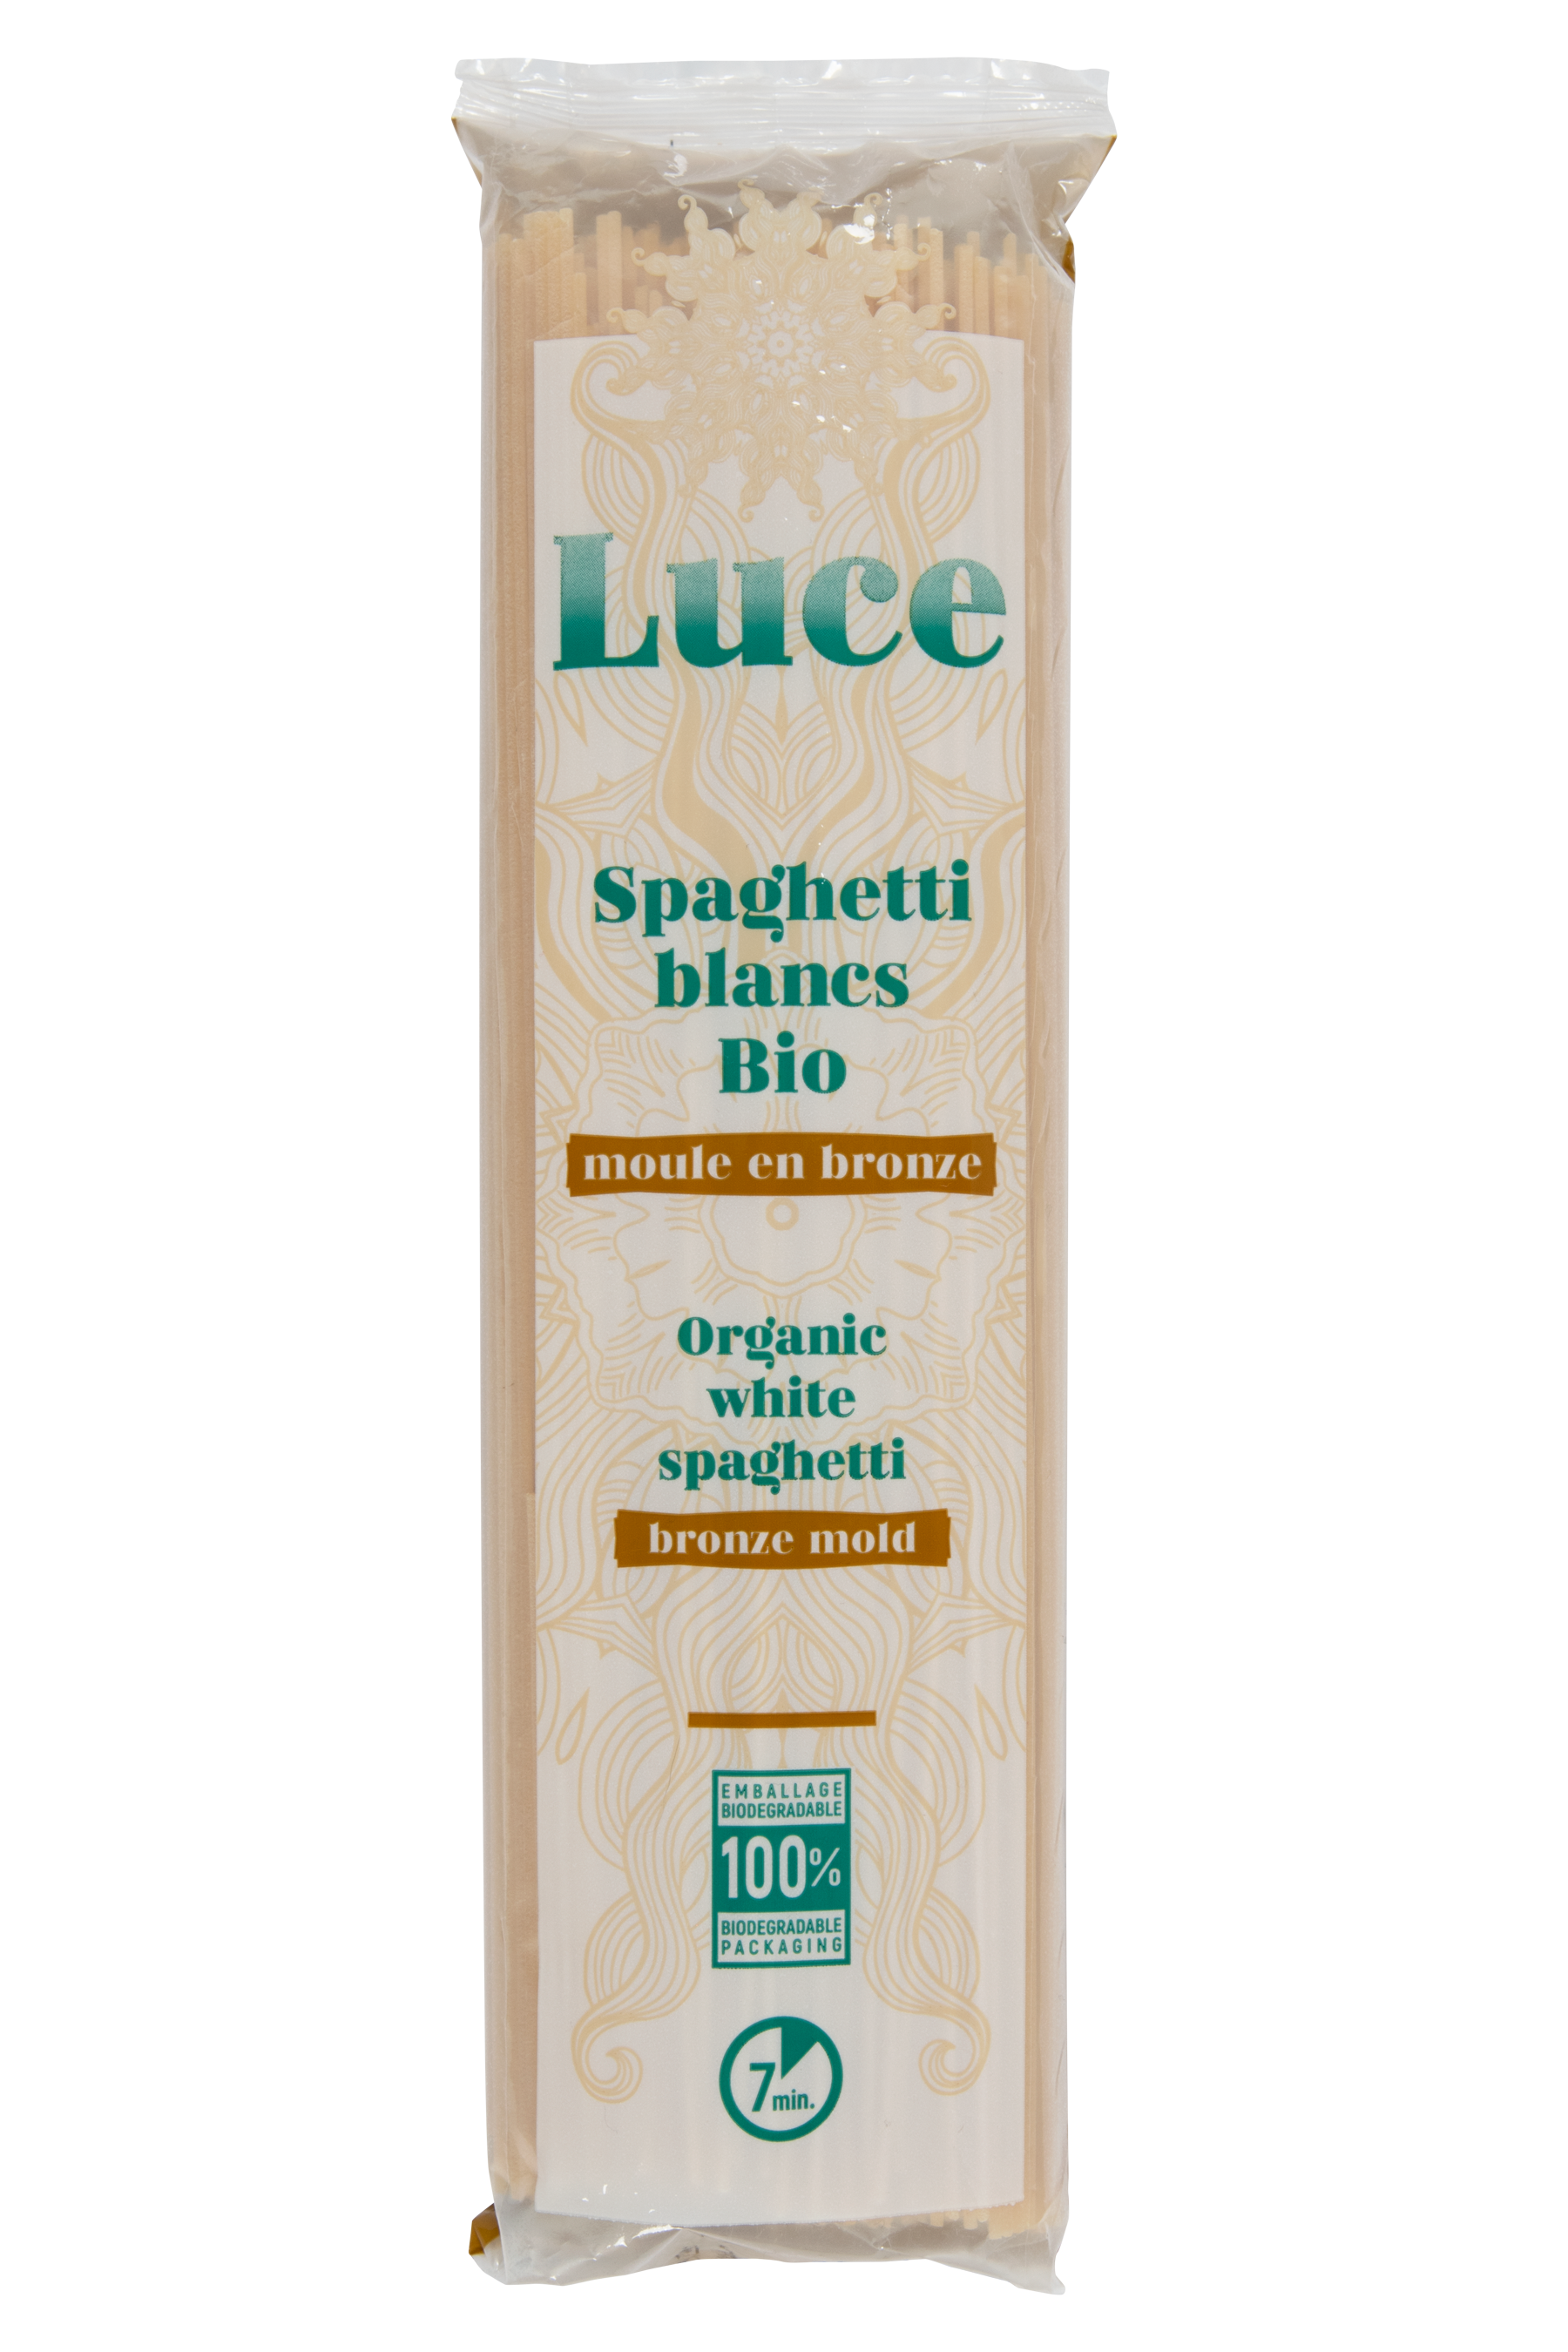 Spaghetti blancs - moule en bronze